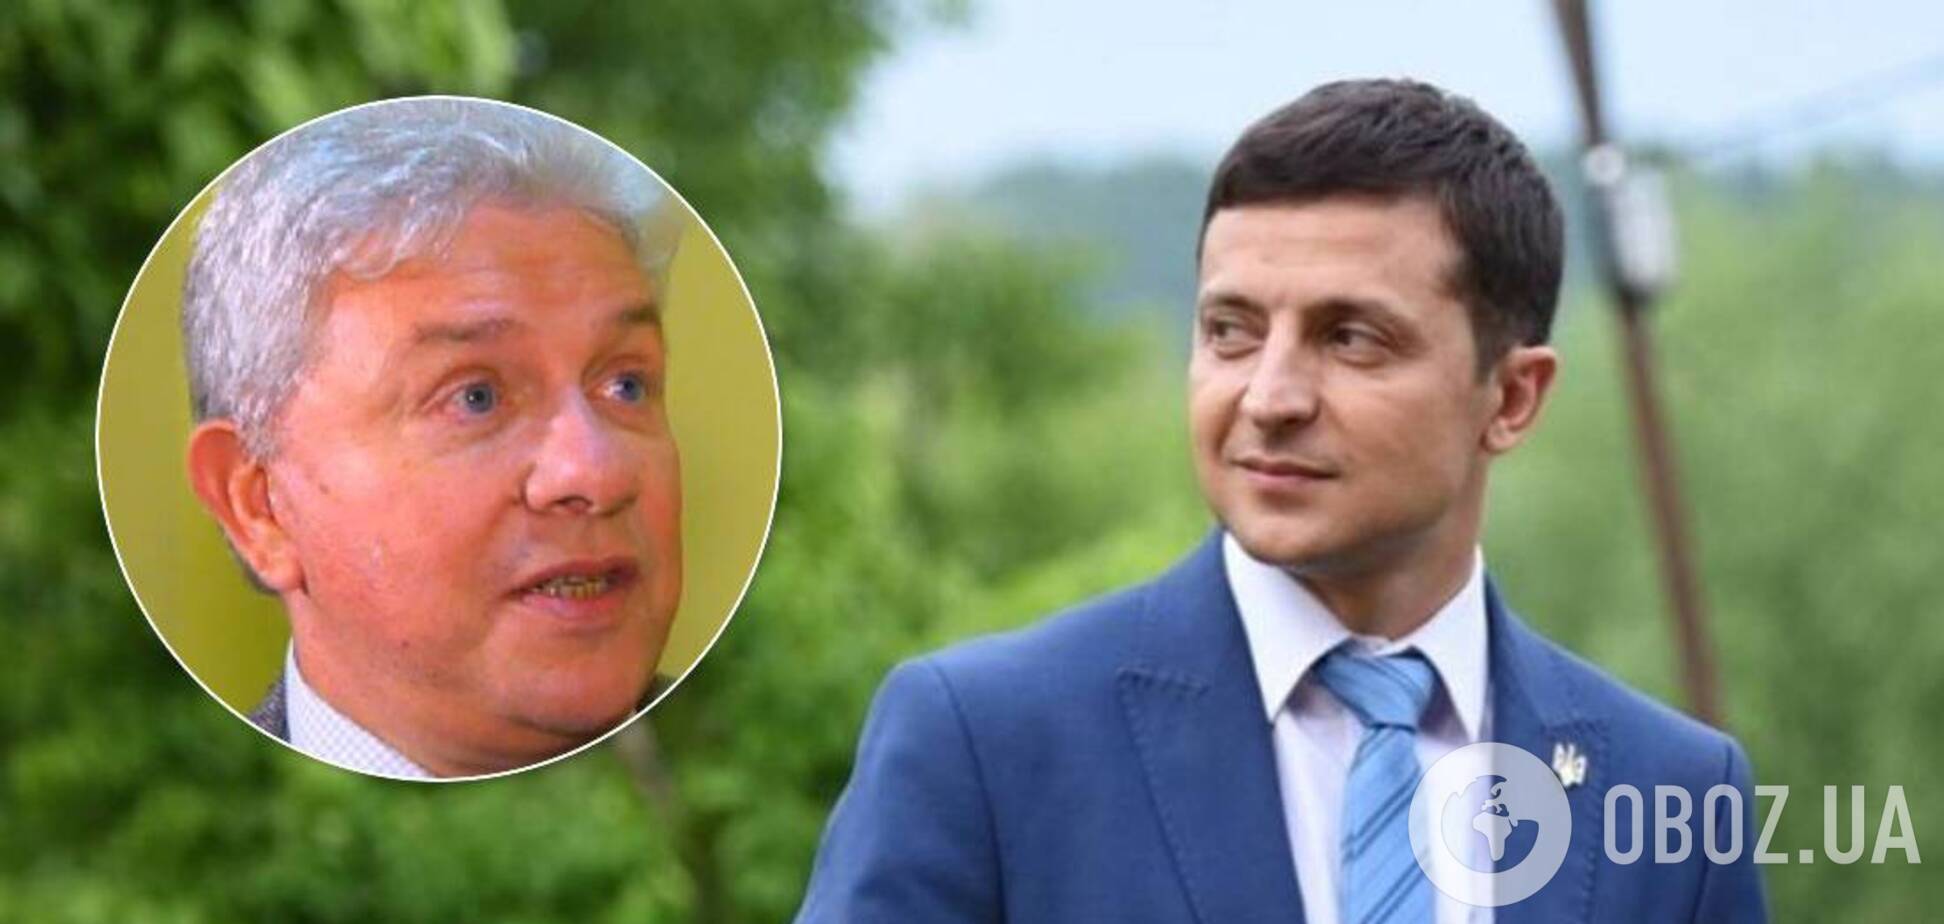 Зеленський запропонував відомому гравцеві КВК балотуватися в мери Одеси, – ЗМІ